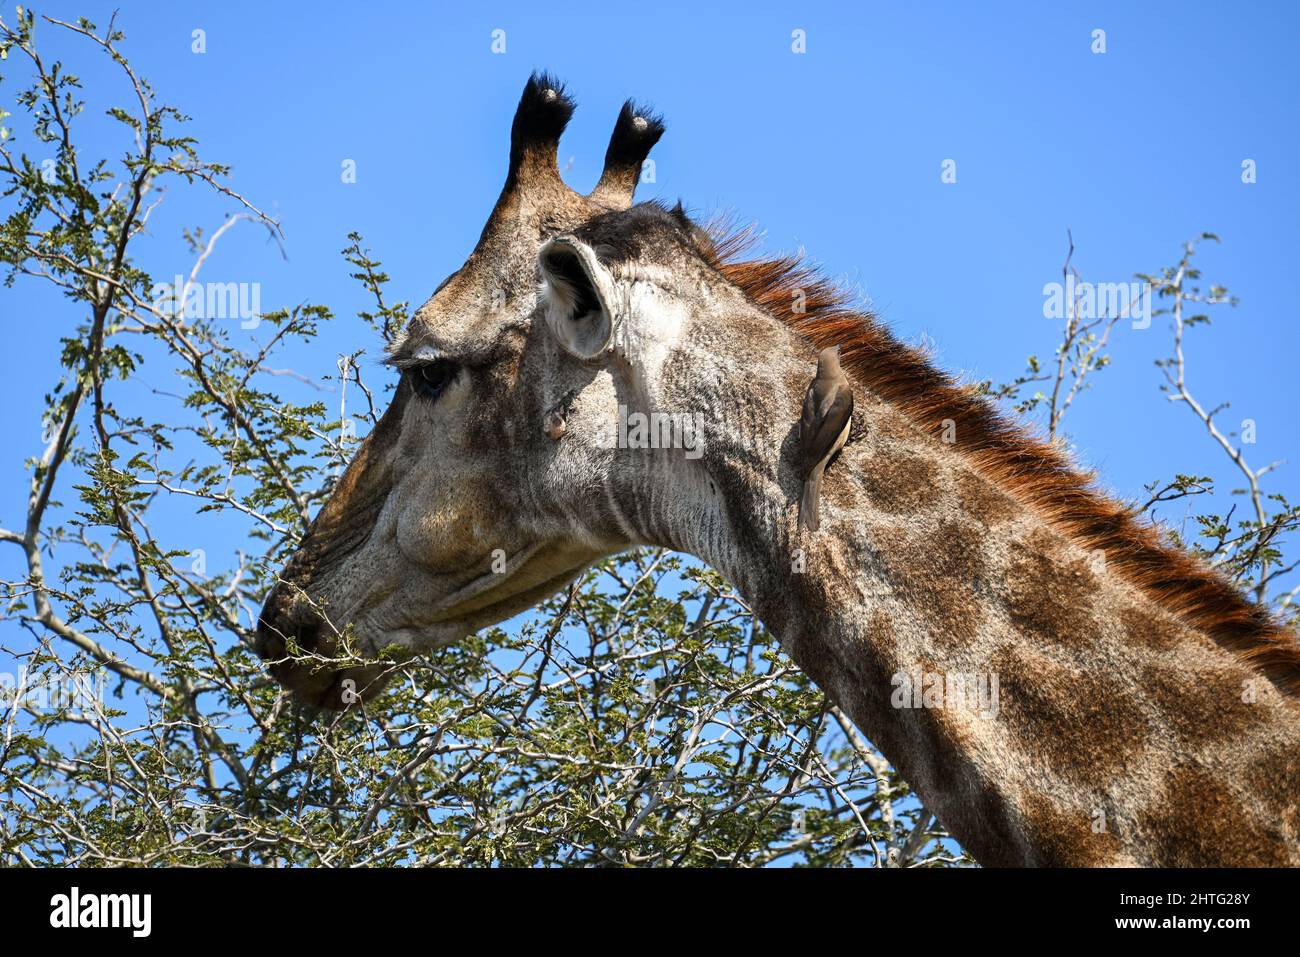 Head of giraffe grazing Stock Photo